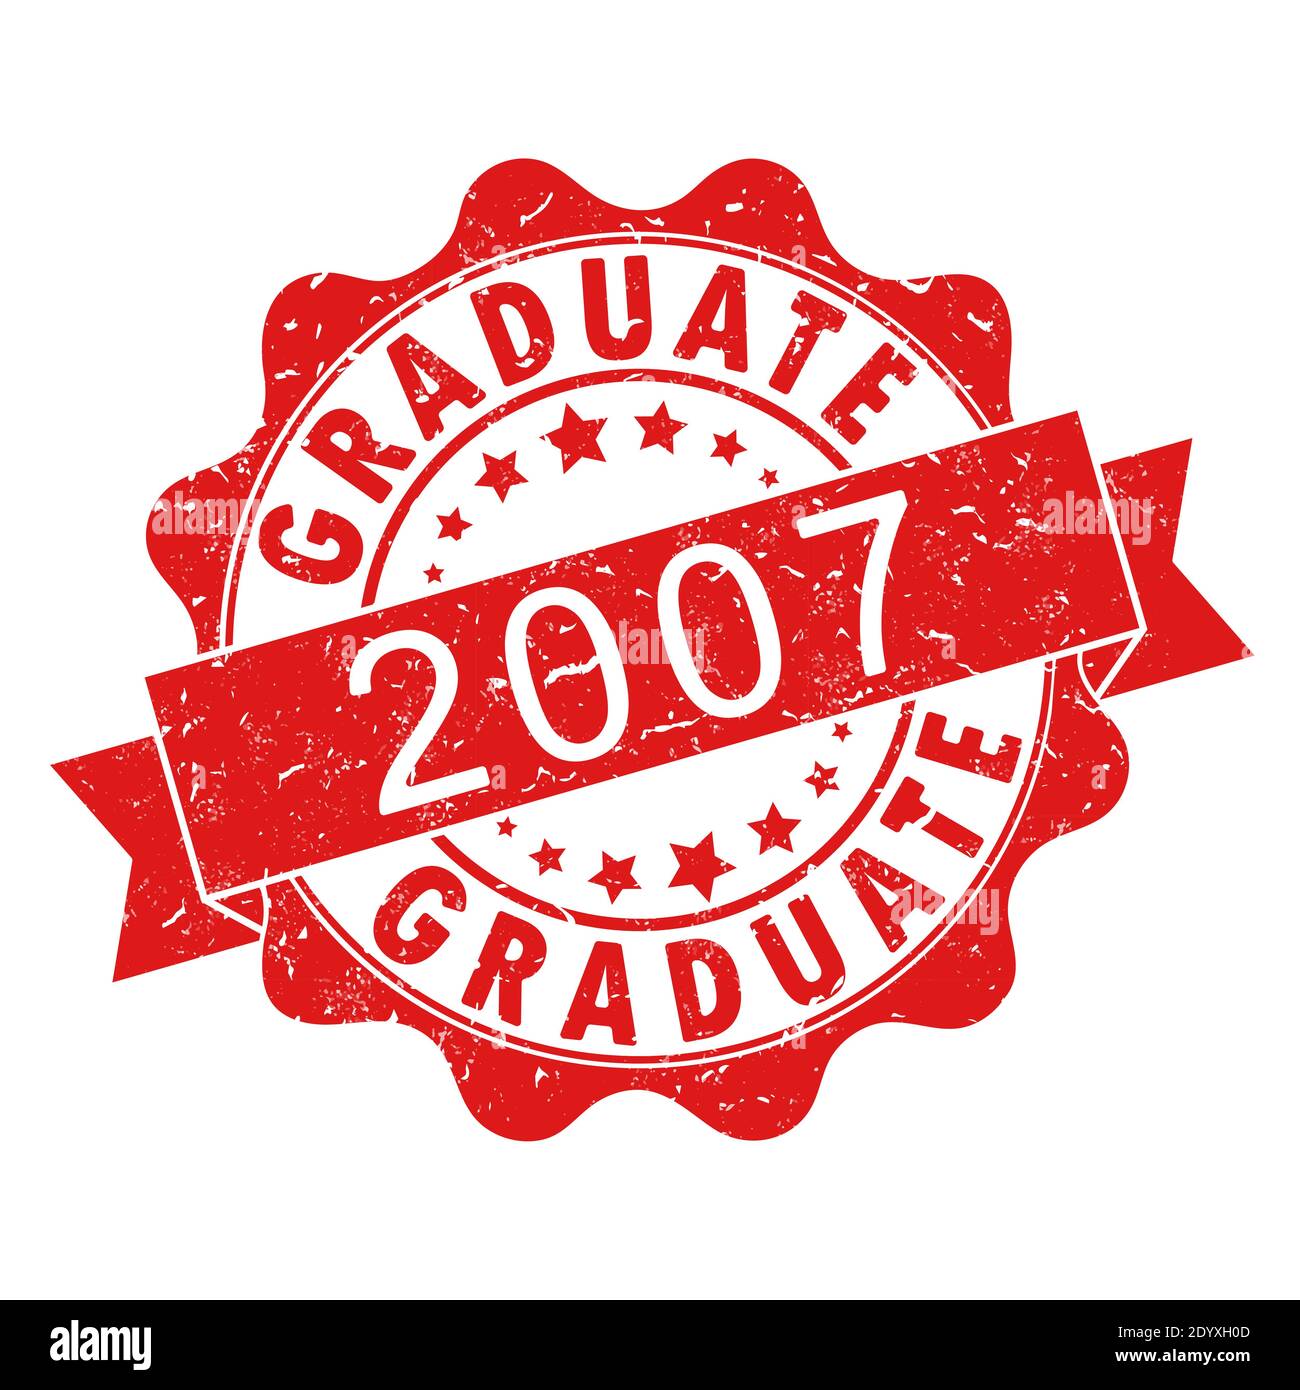 Ein Eindruck einer alten abgenutzten Briefmarke mit der Aufschrift GRADUATE 2007. Vektor-Illustration für thematische Gestaltung, Alumni-Treffen, Diplome und Zertifikat Stock Vektor